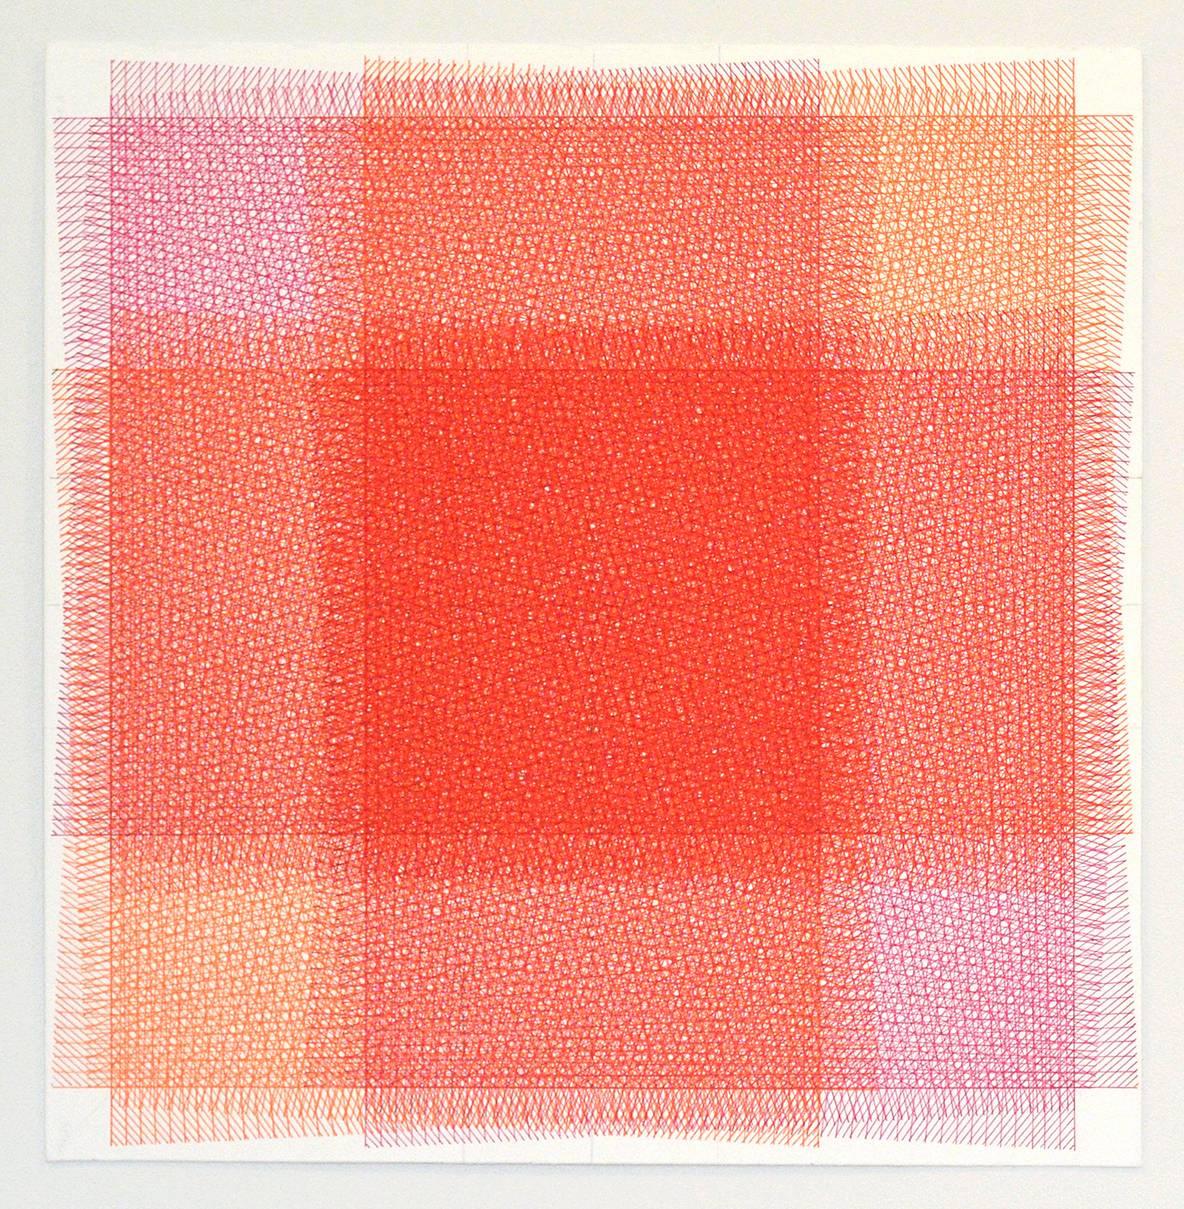 Sara Eichner, 32 Layers Pink and Orange, 2016, , Minimalist Abstraction, Ink